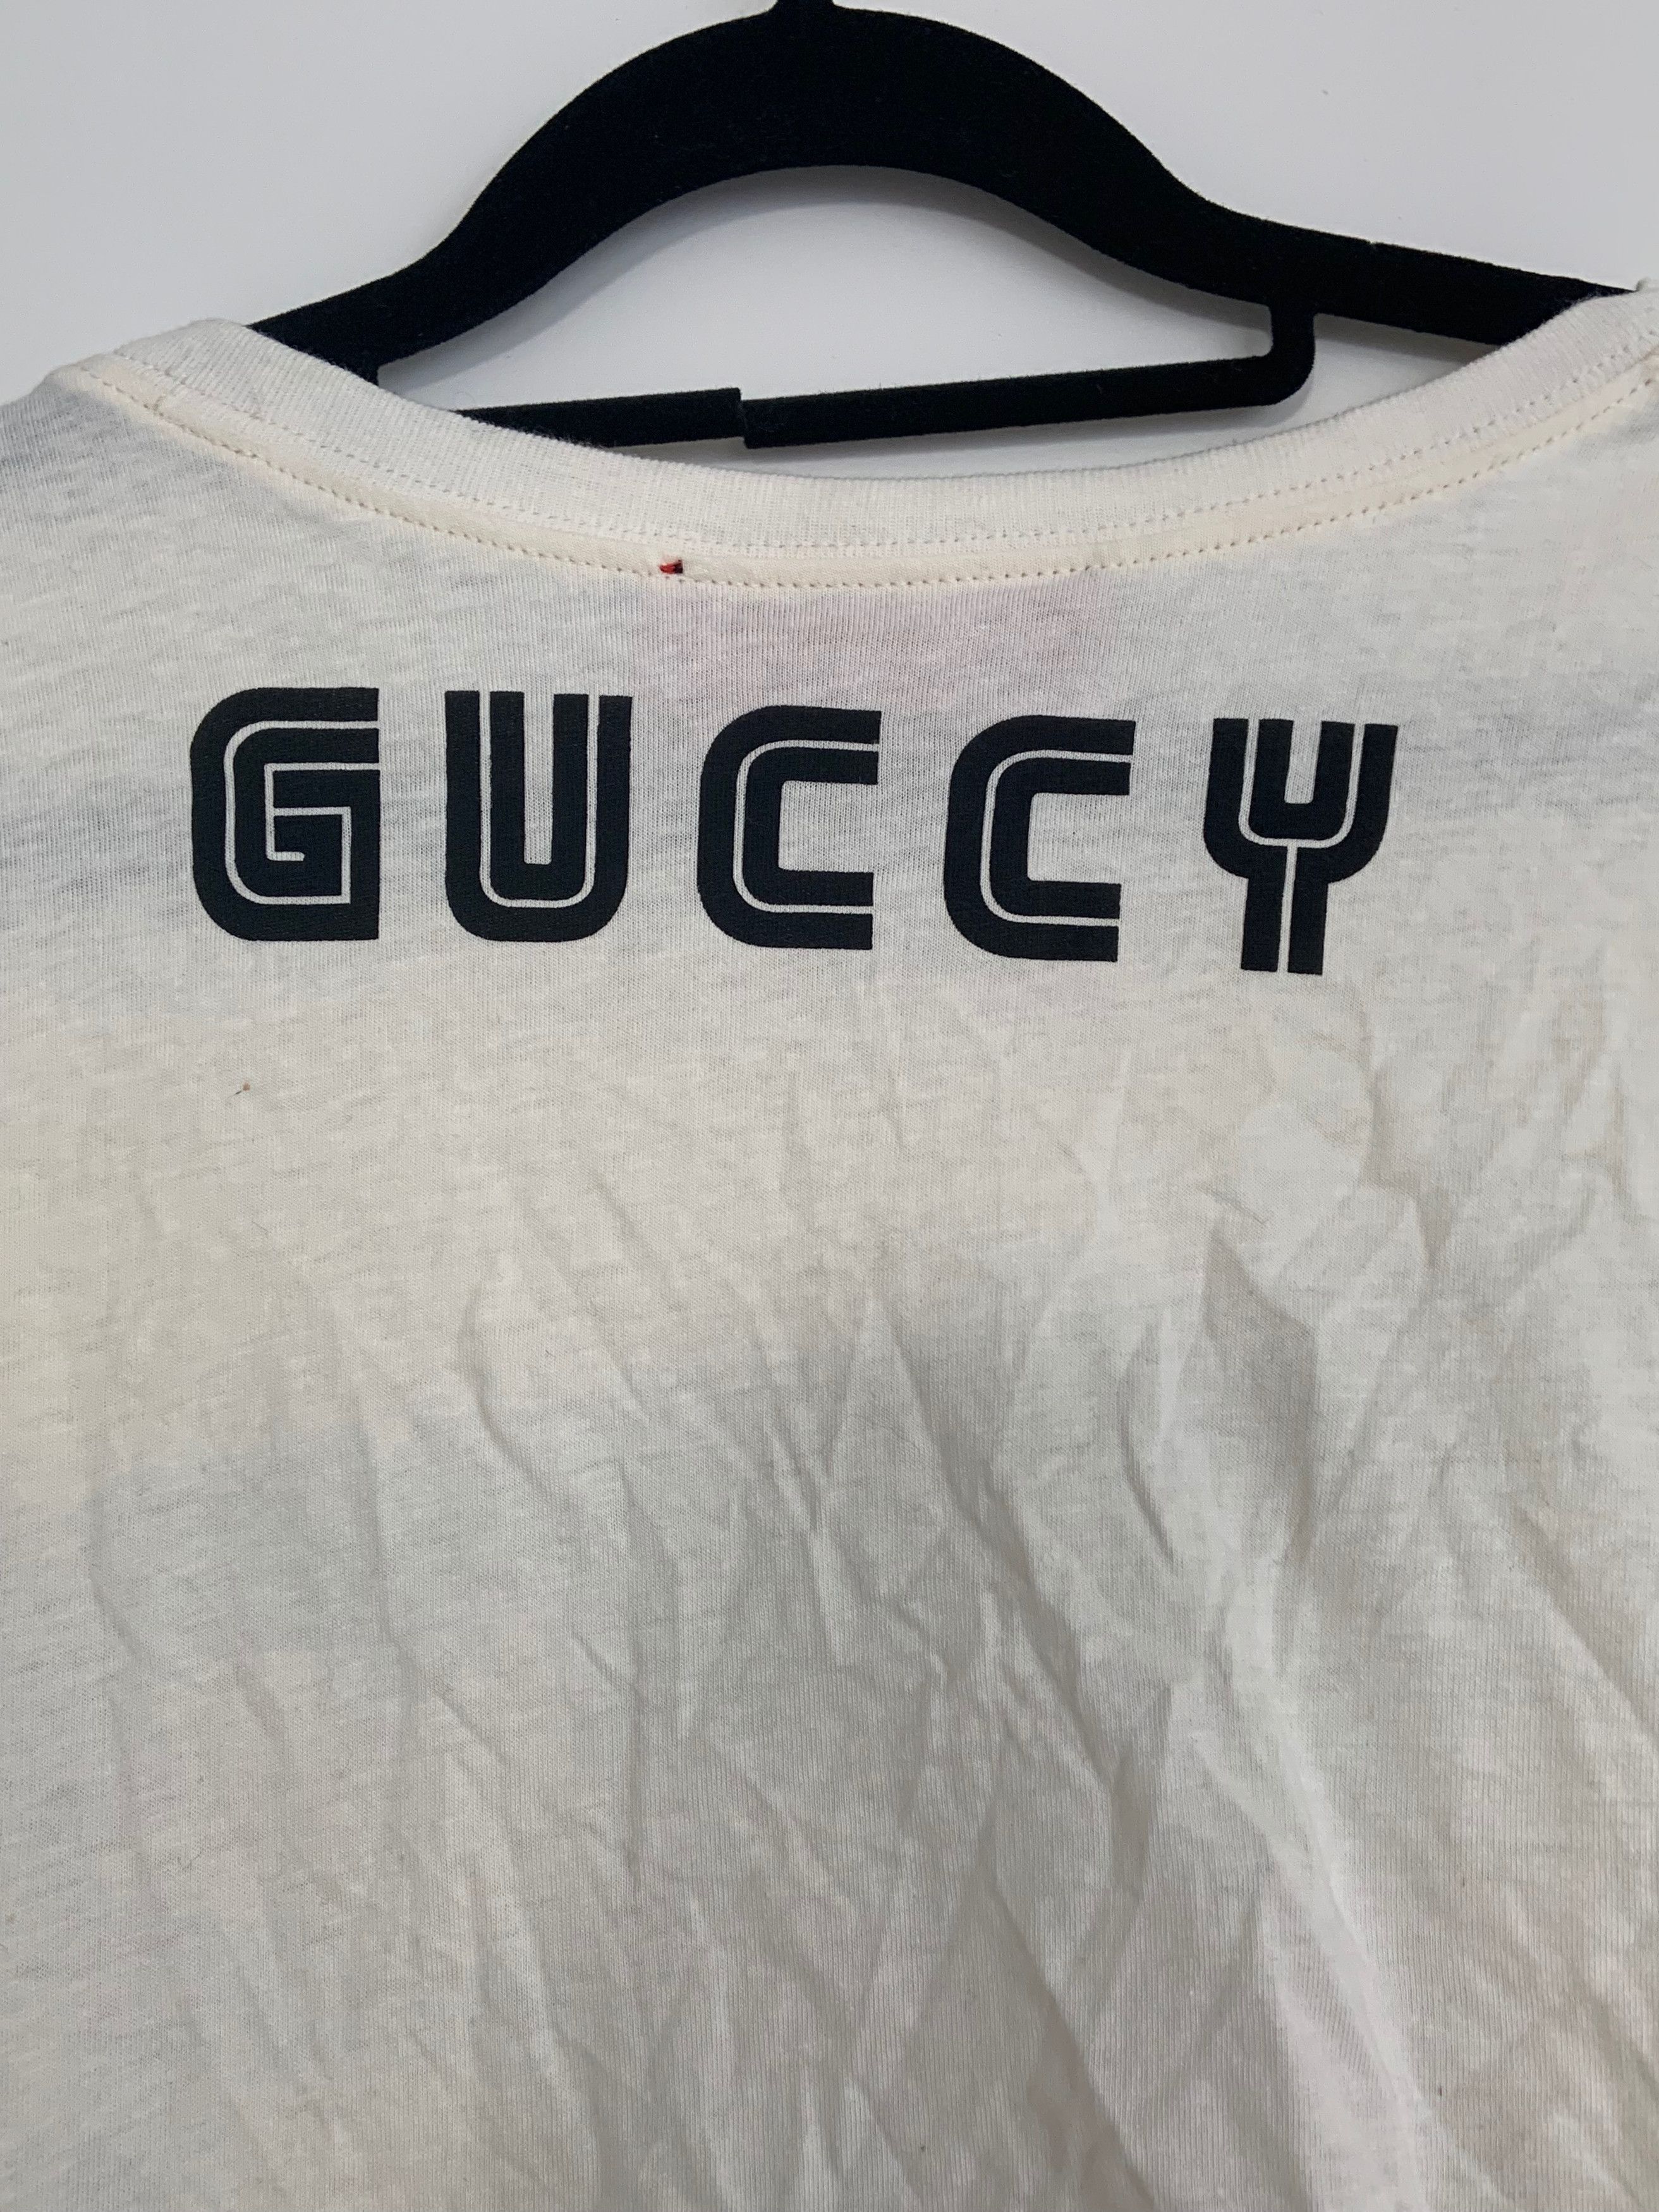 Gucci Gucci Elton John T-shirt Size US S / EU 44-46 / 1 - 2 Preview